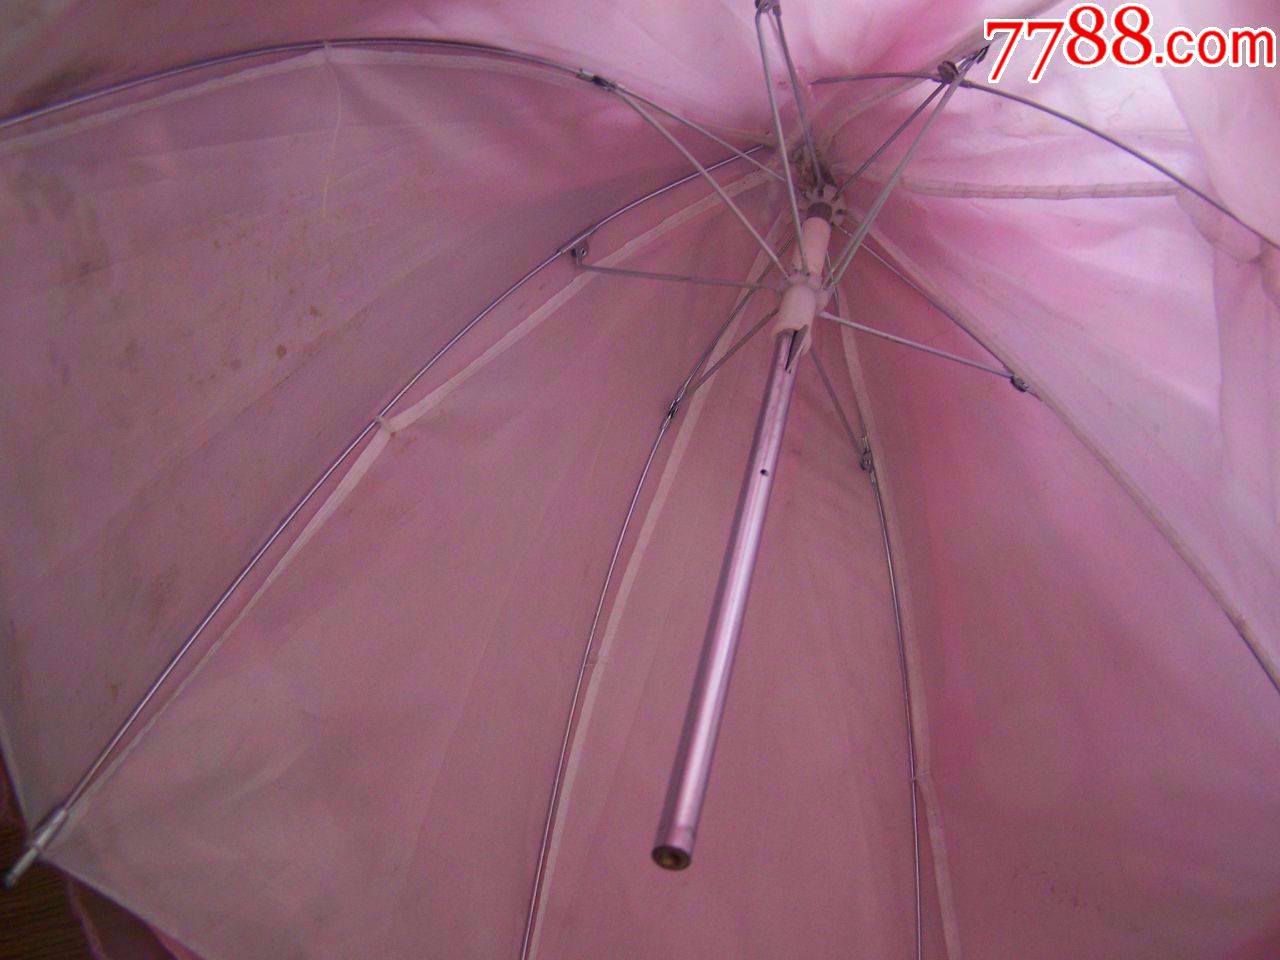 贵妇,娃娃,底是雨伞,可以开合,高(58厘米)点图可